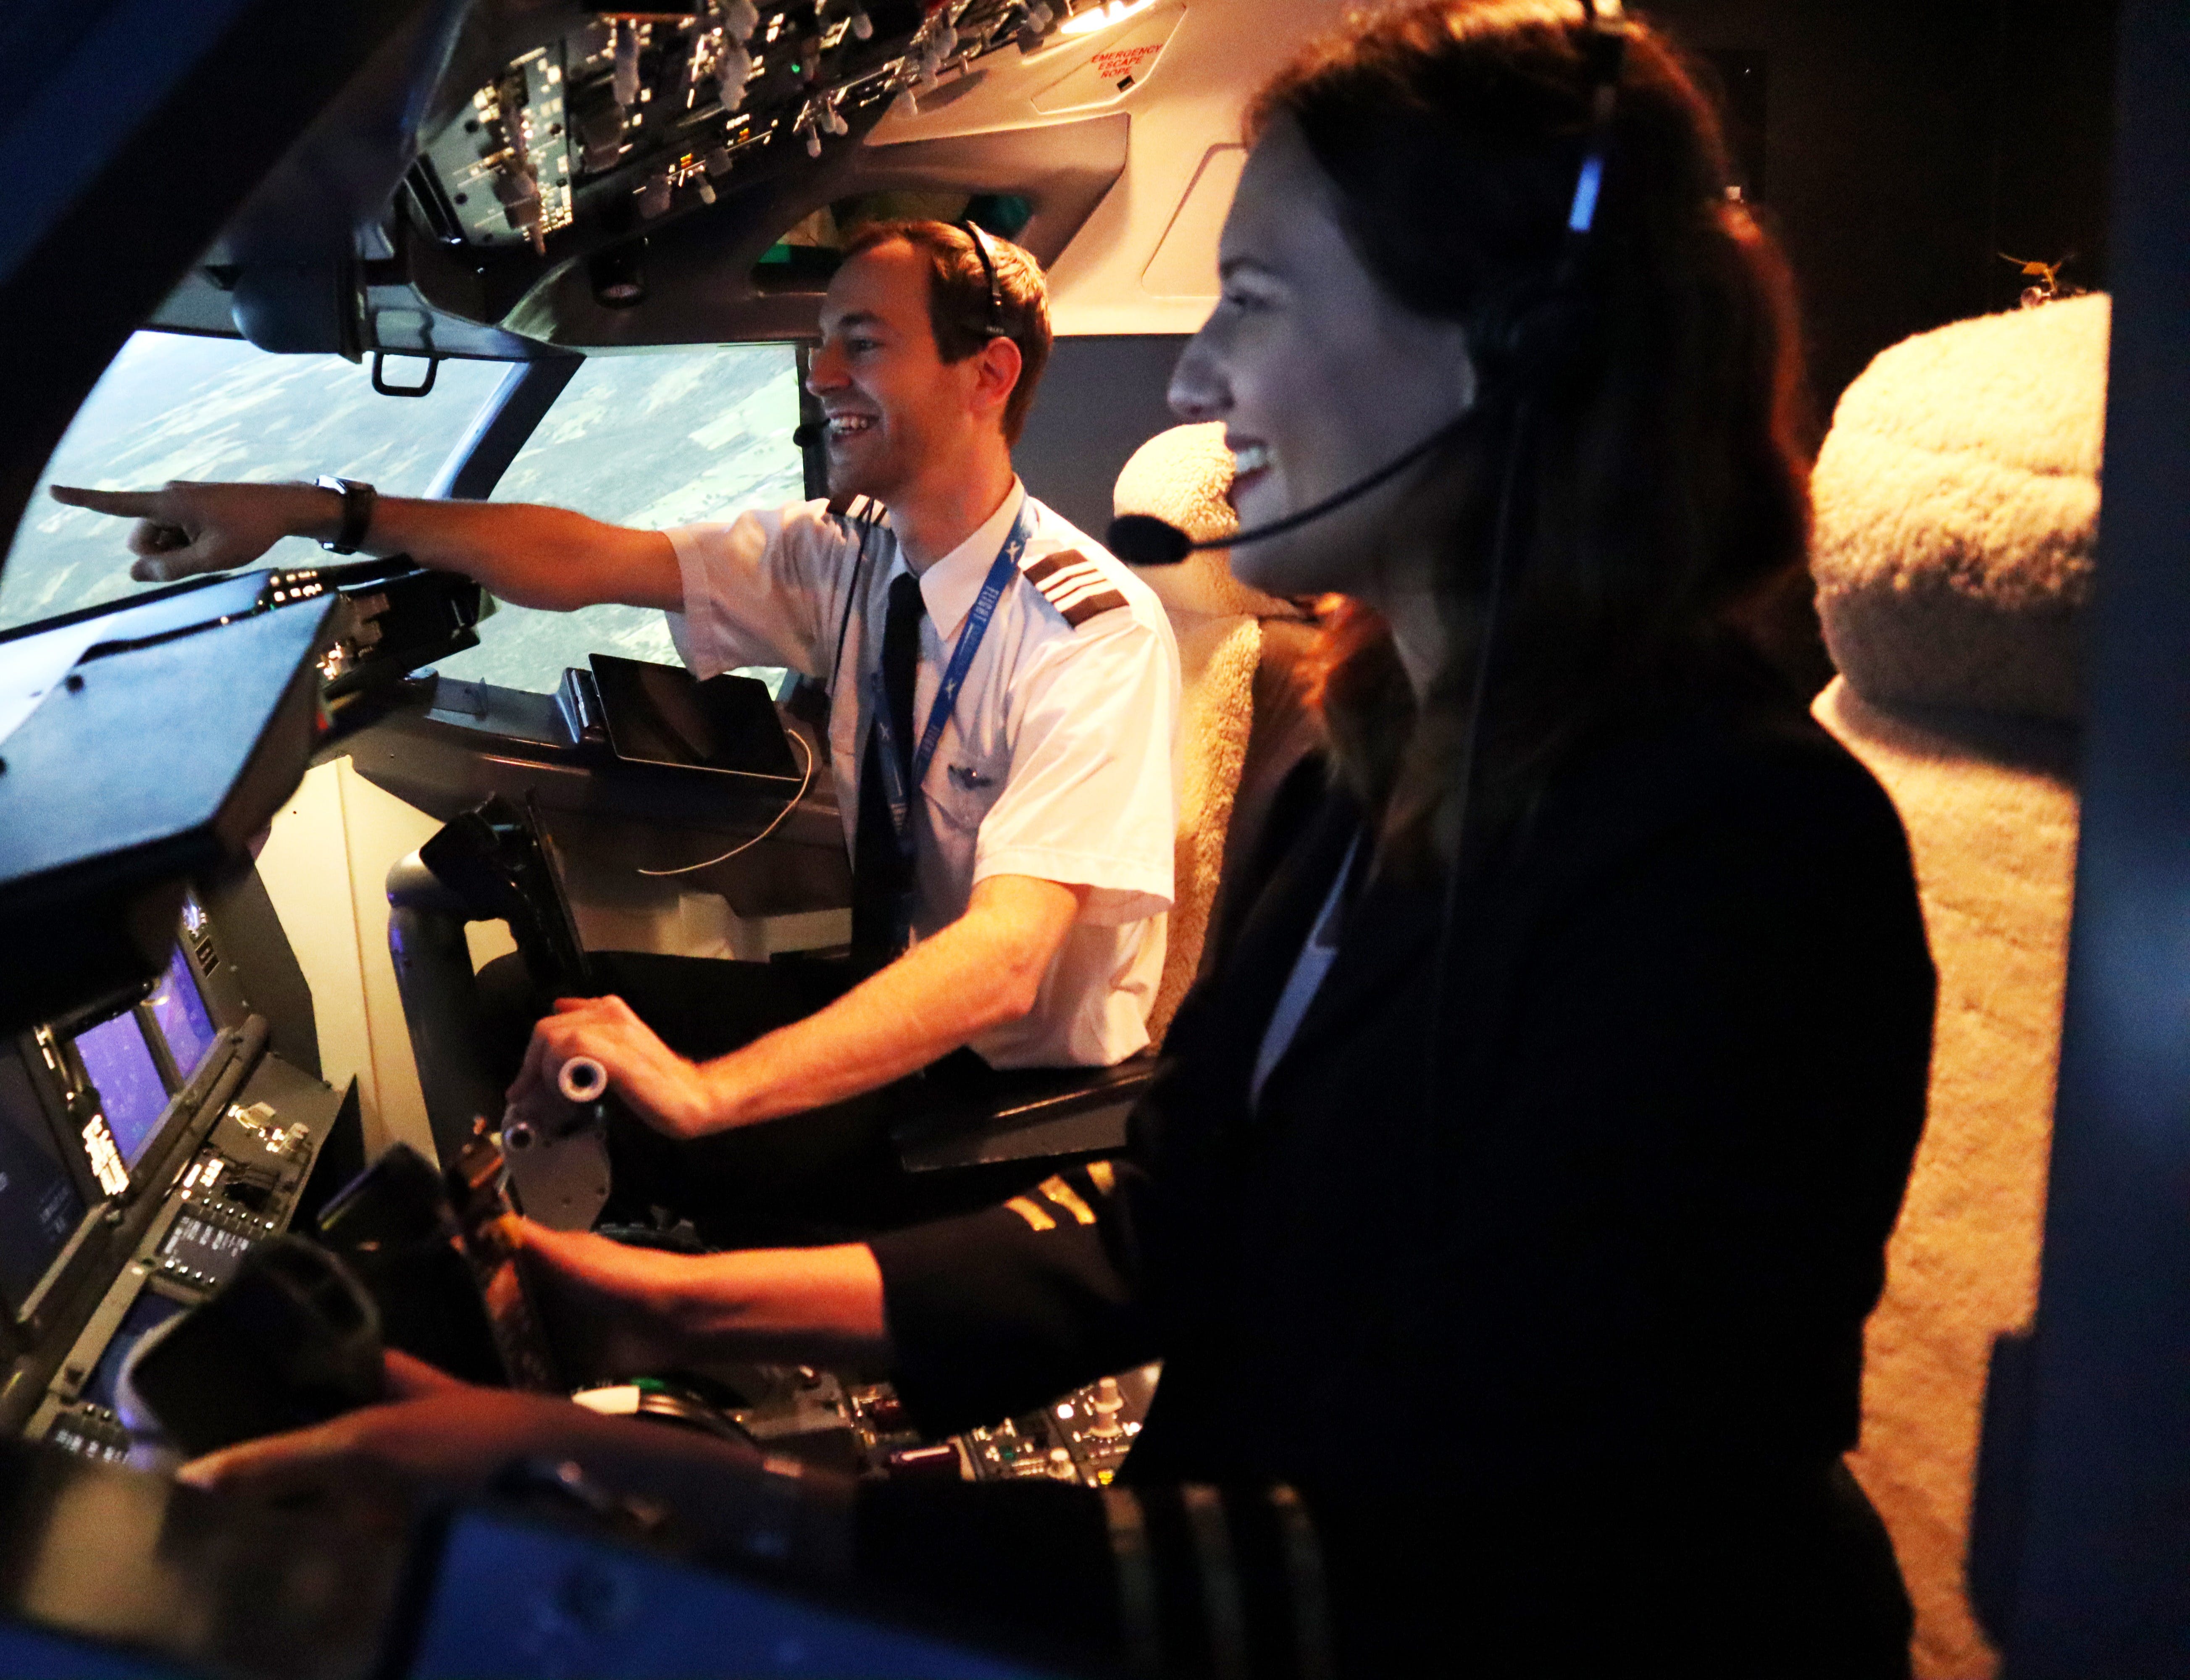 Flight Experience Sydney - Flight Simulations - thumb 2